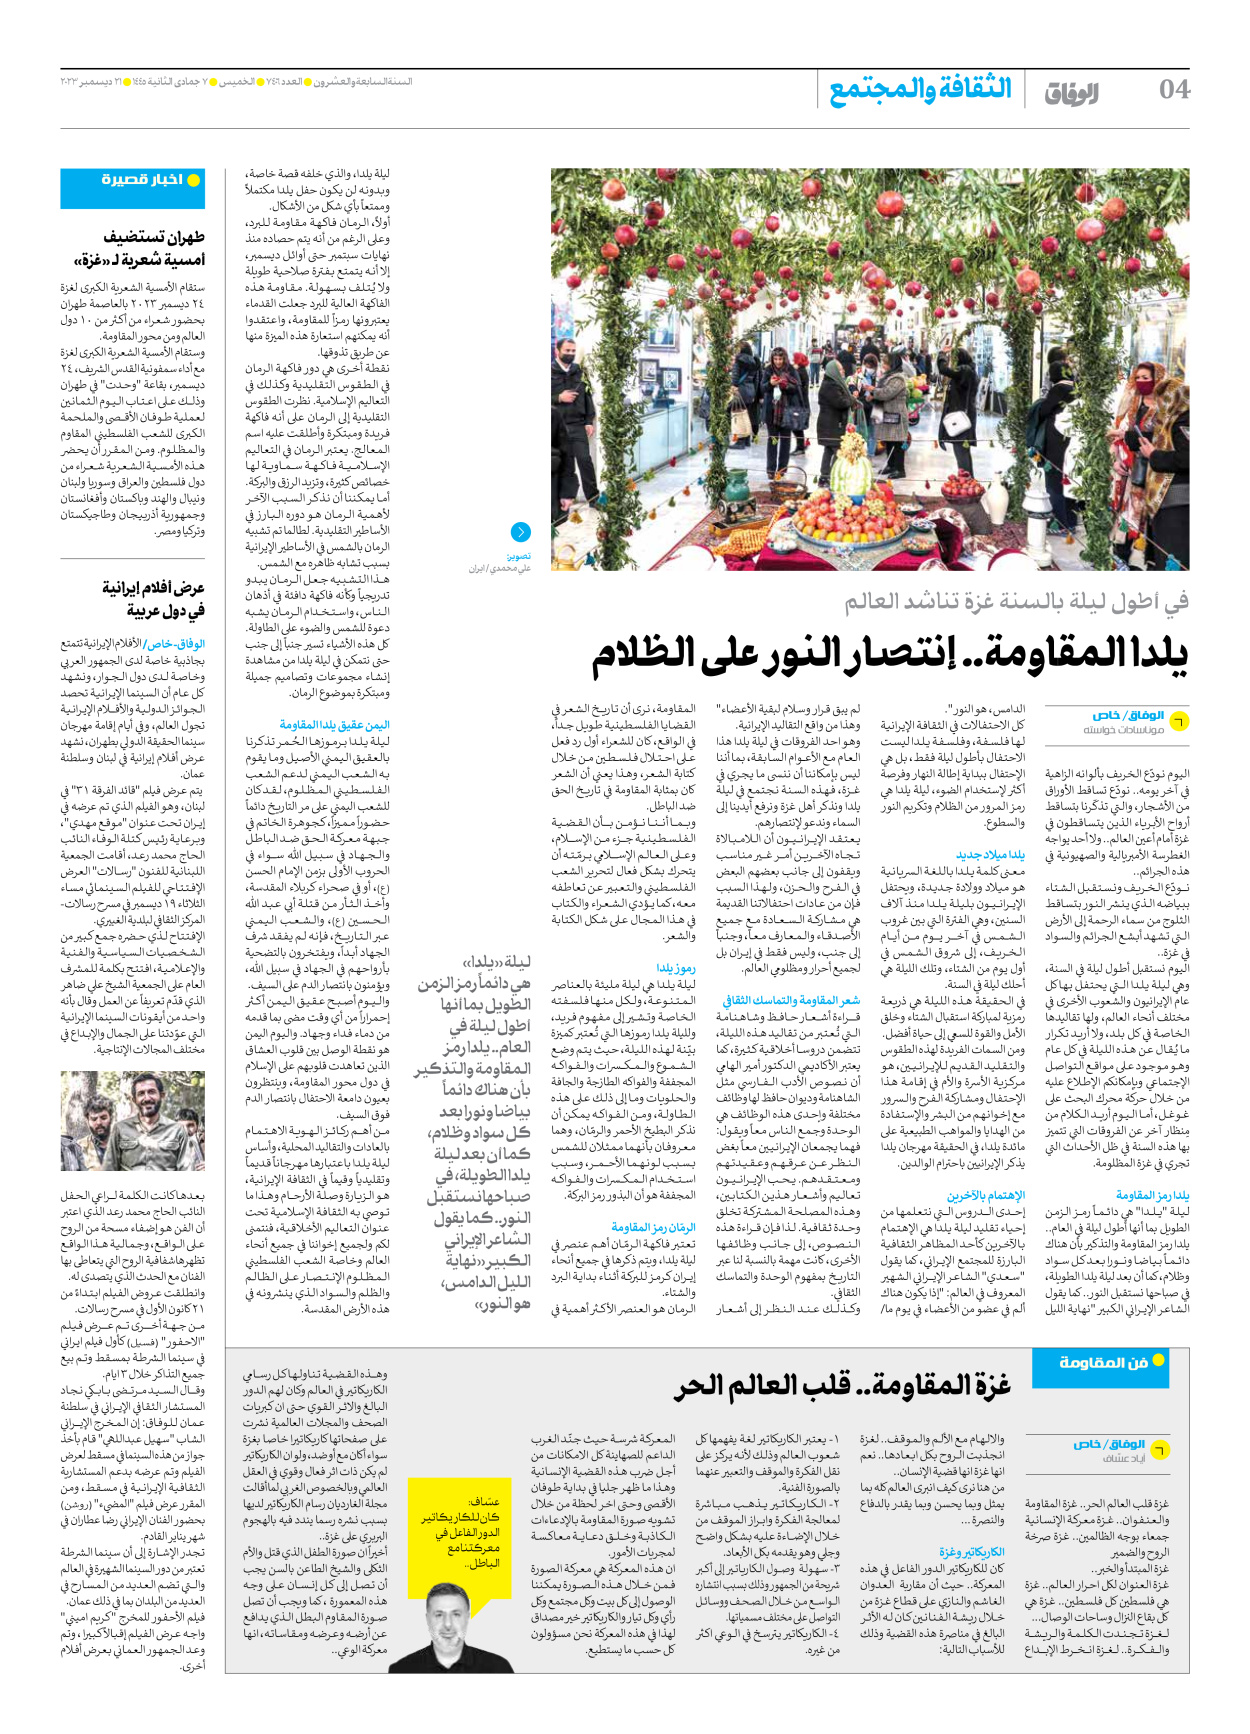 صحیفة ایران الدولیة الوفاق - العدد سبعة آلاف وأربعمائة وستة - ٢١ ديسمبر ٢٠٢٣ - الصفحة ٤